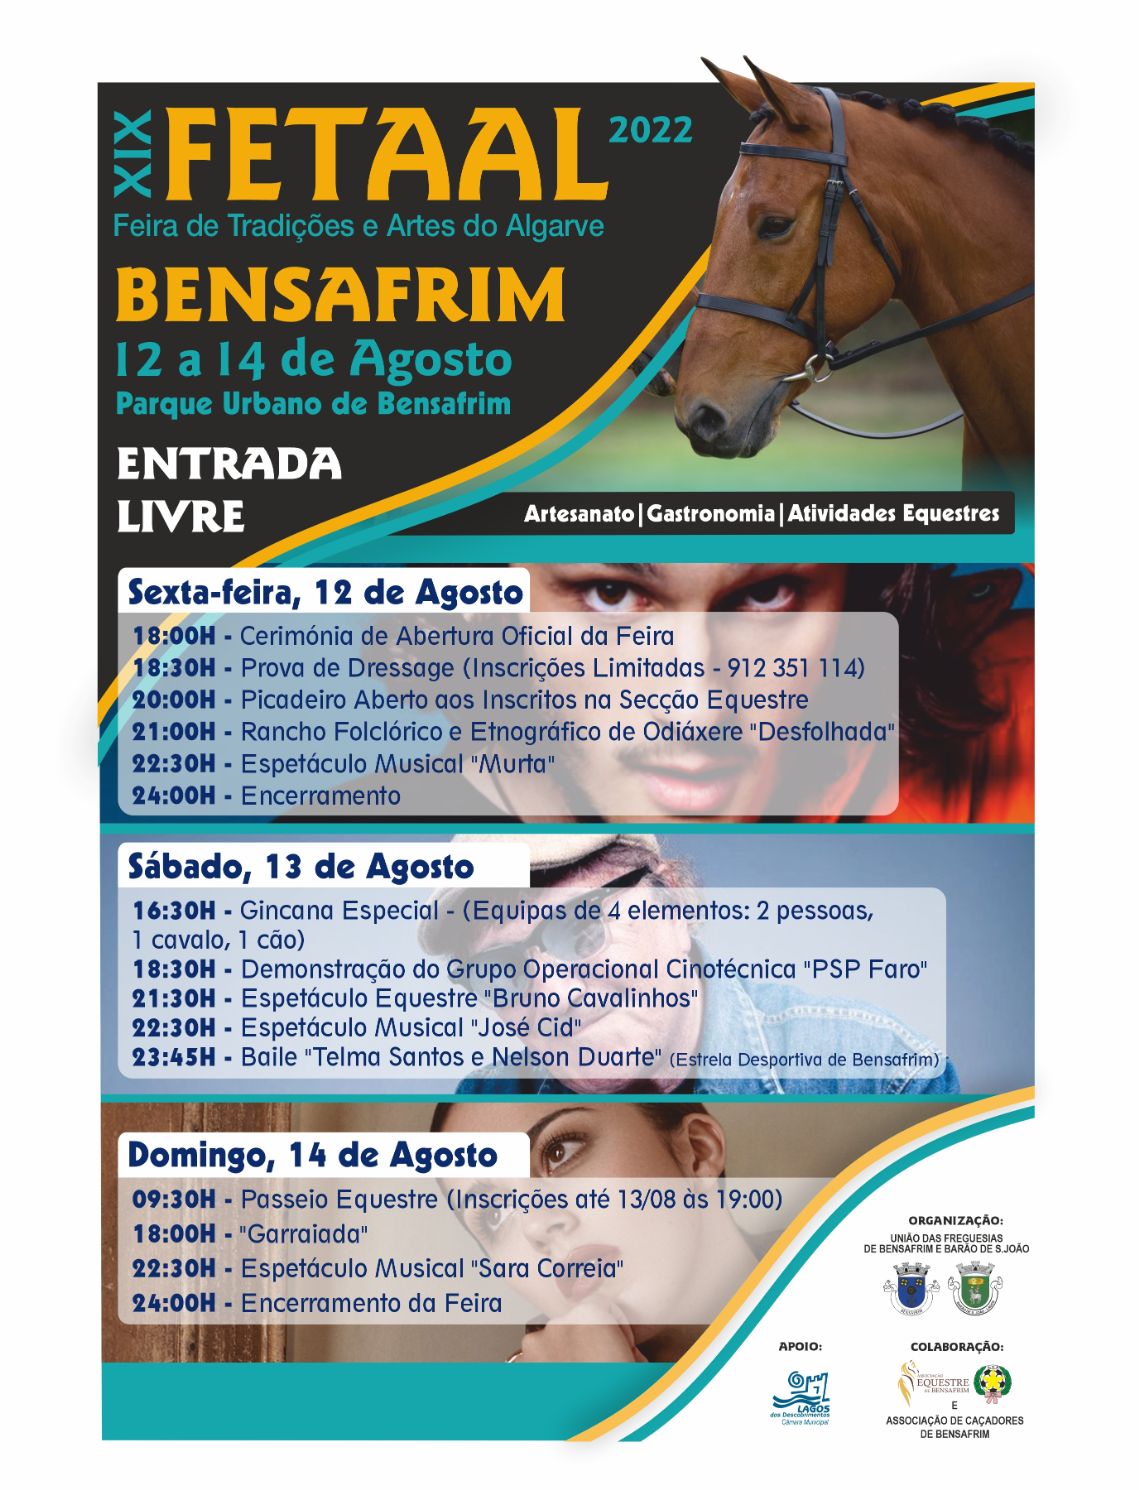 FETAAL - Feira de Tradições e Artes do Algarve regressa a Bensafrim com cartaz espectacular